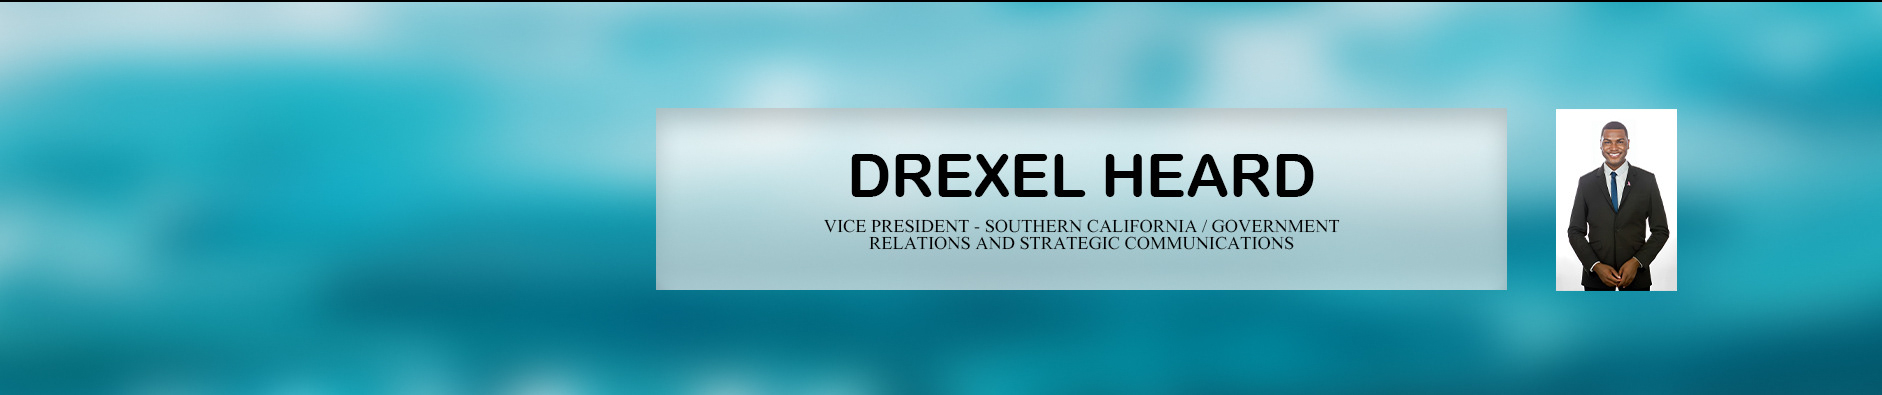 Drexel Heard II's profile banner